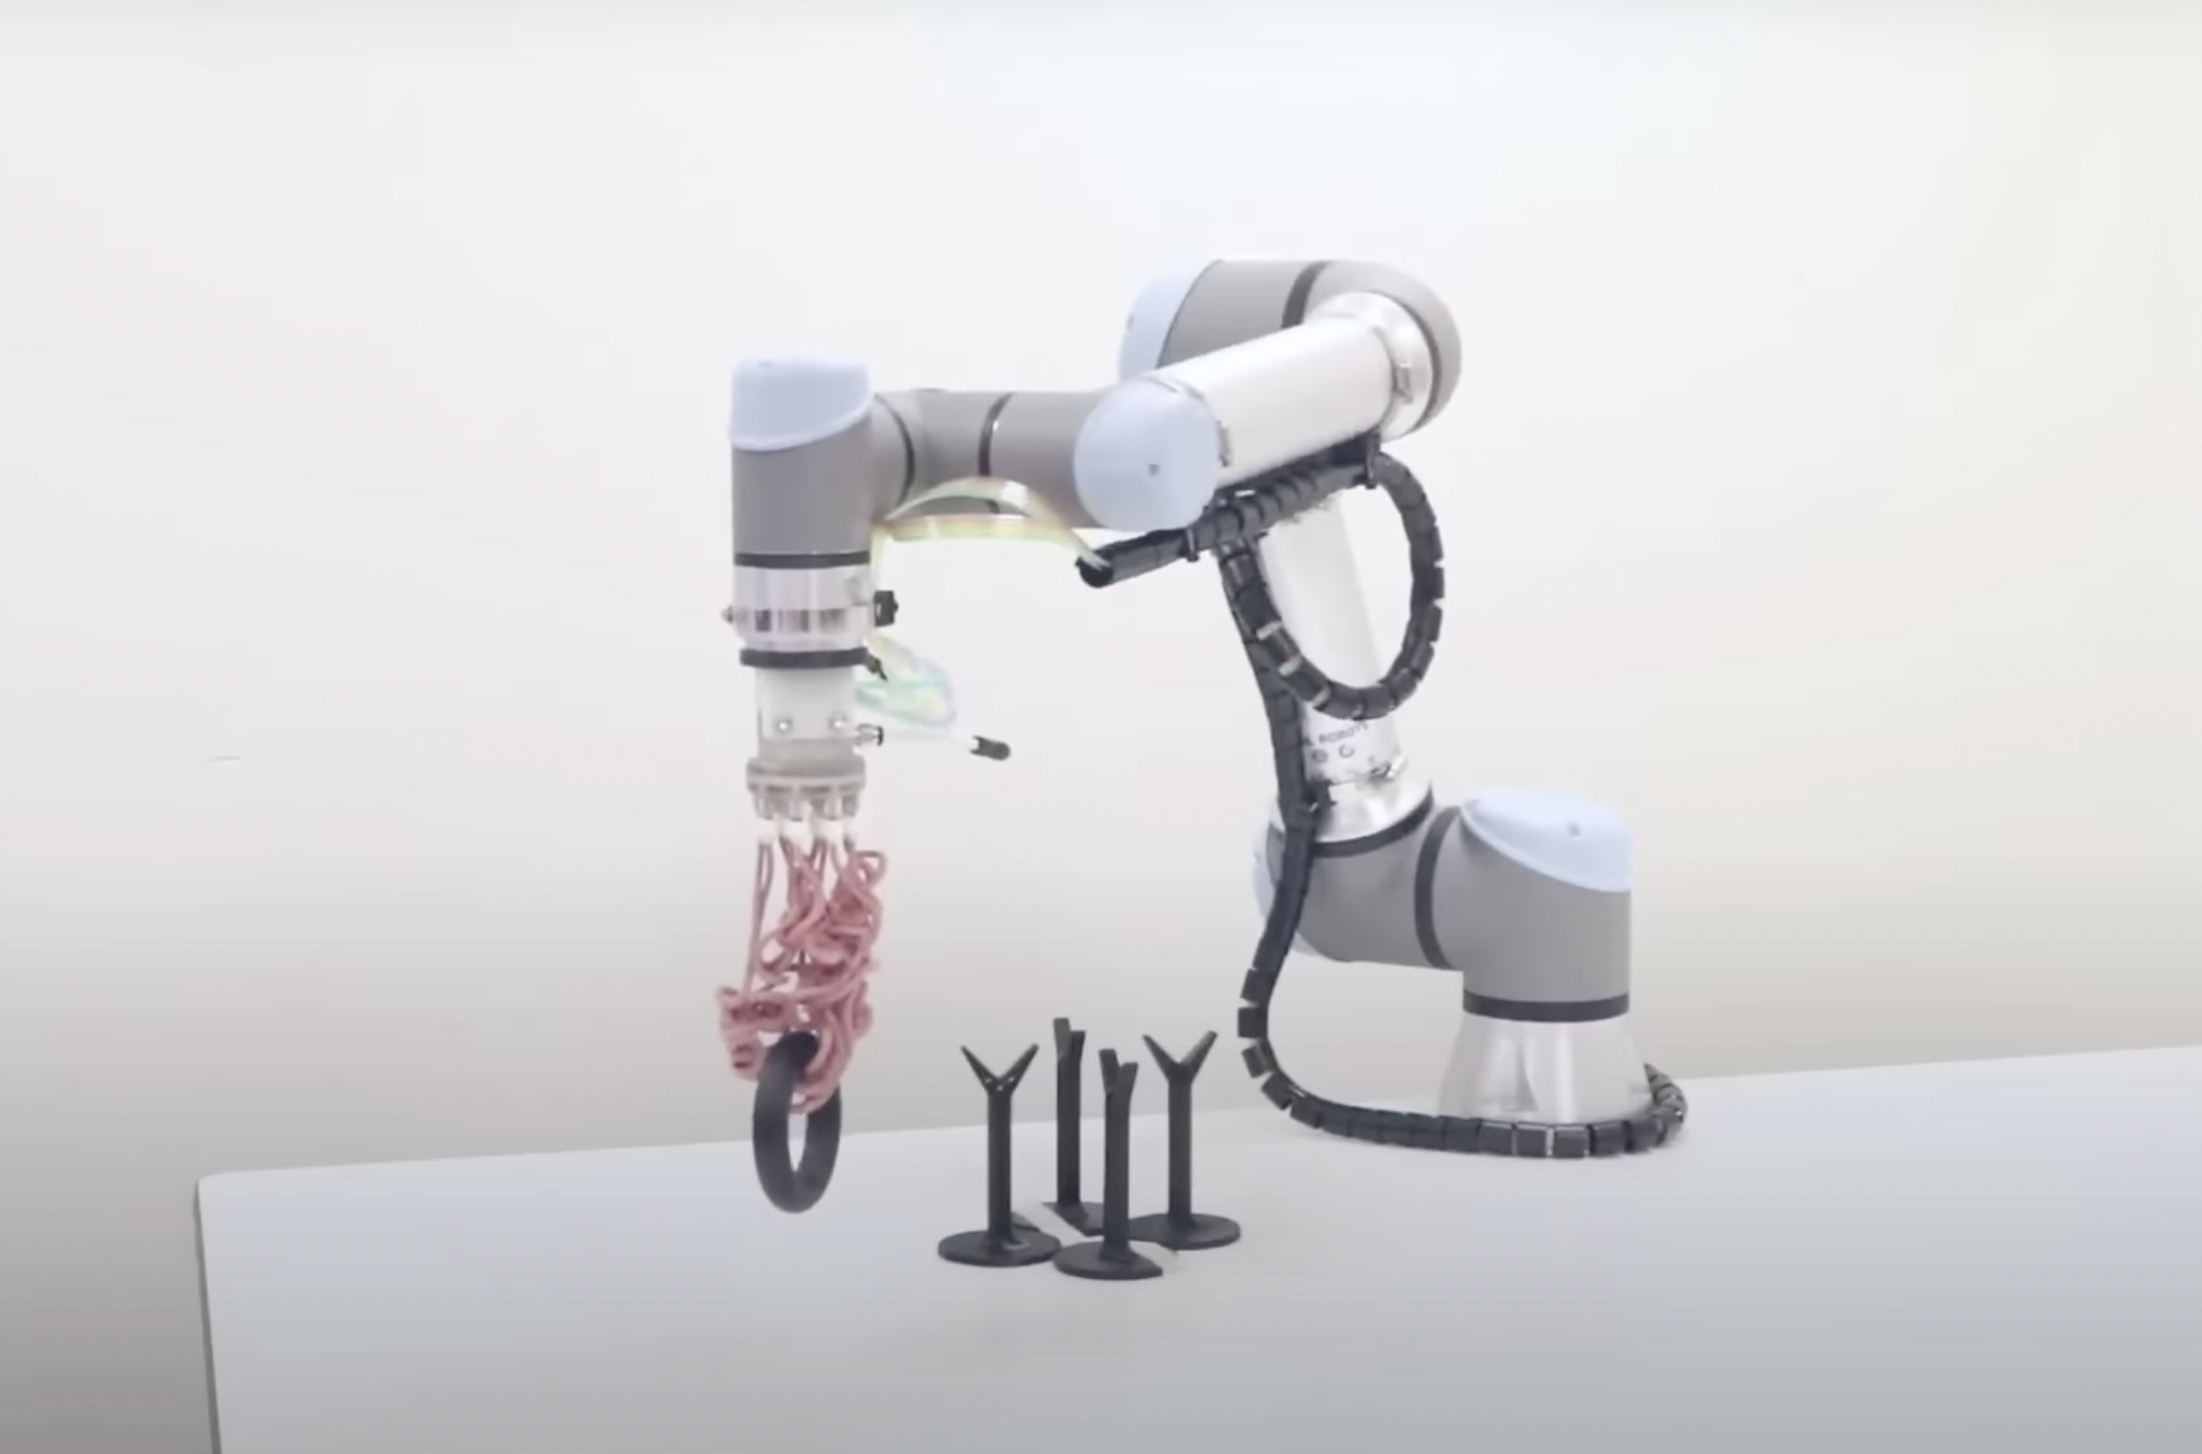 Una mano robótica tiene tentáculos neumáticos de goma y sirve para esto